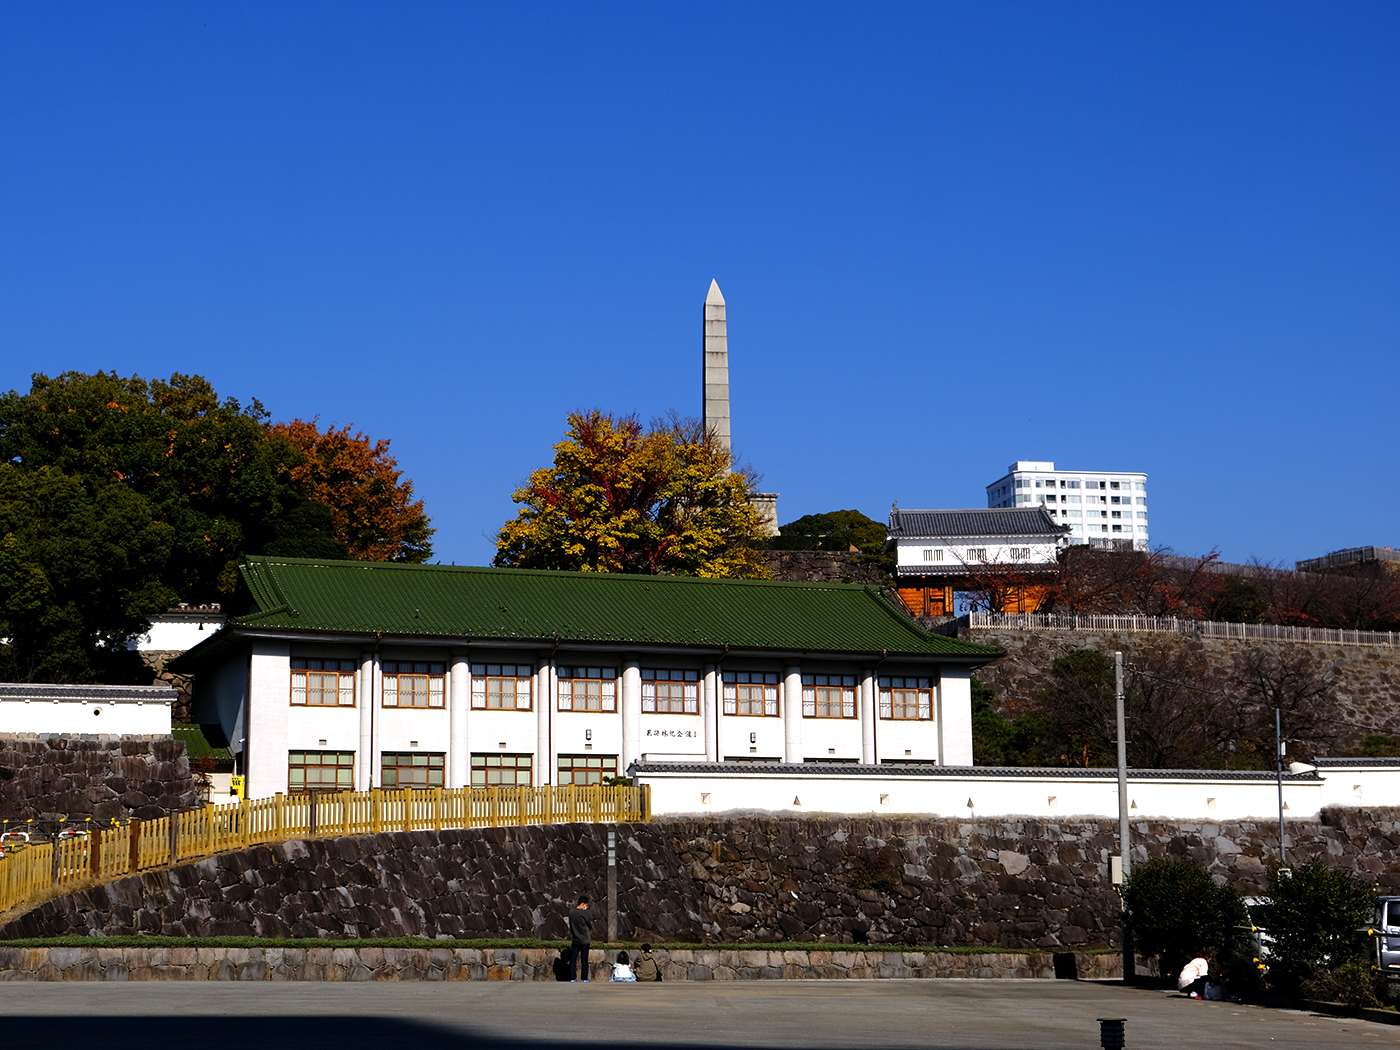 ある意味、この風景も日本に見えない…なぜお城があったところにあんな塔や建物を…